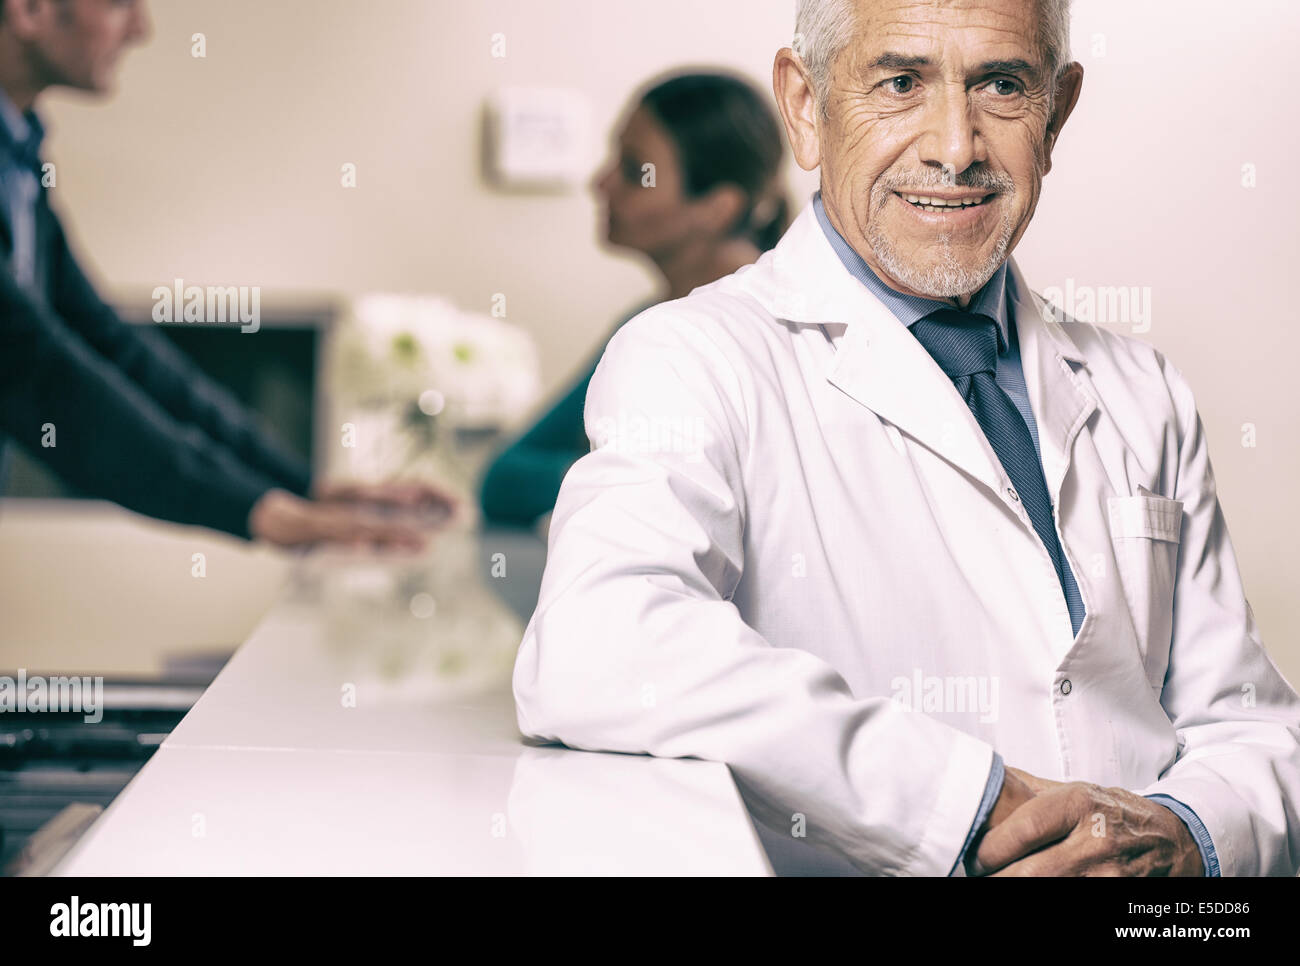 Lächelnd senior männlichen Arzt lächelnd am Krankenhaus an der Rezeption, Patientin auf Hintergrund mit junger Arzt zu sprechen. Stockfoto